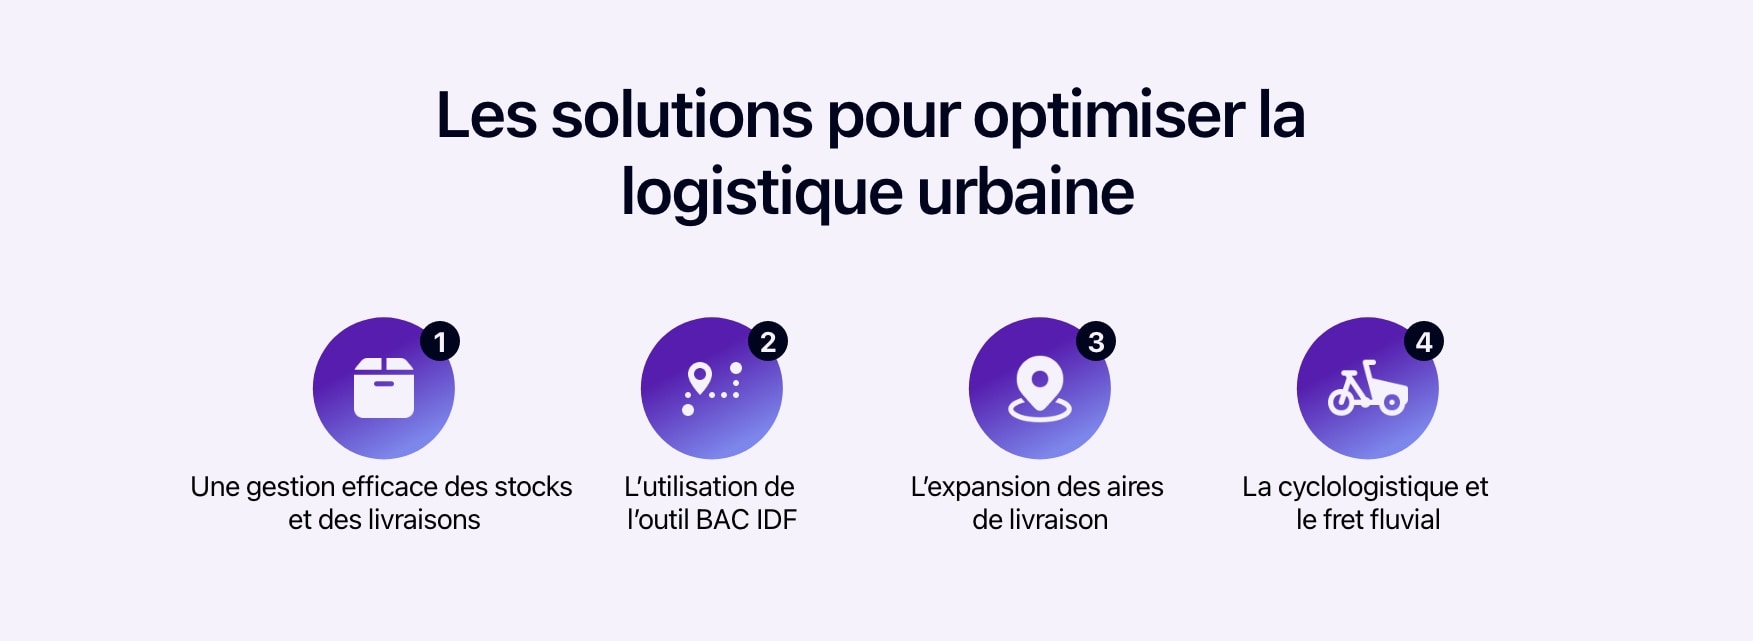 Schéma présentant les solutions pour optimiser la logistique urbaine.